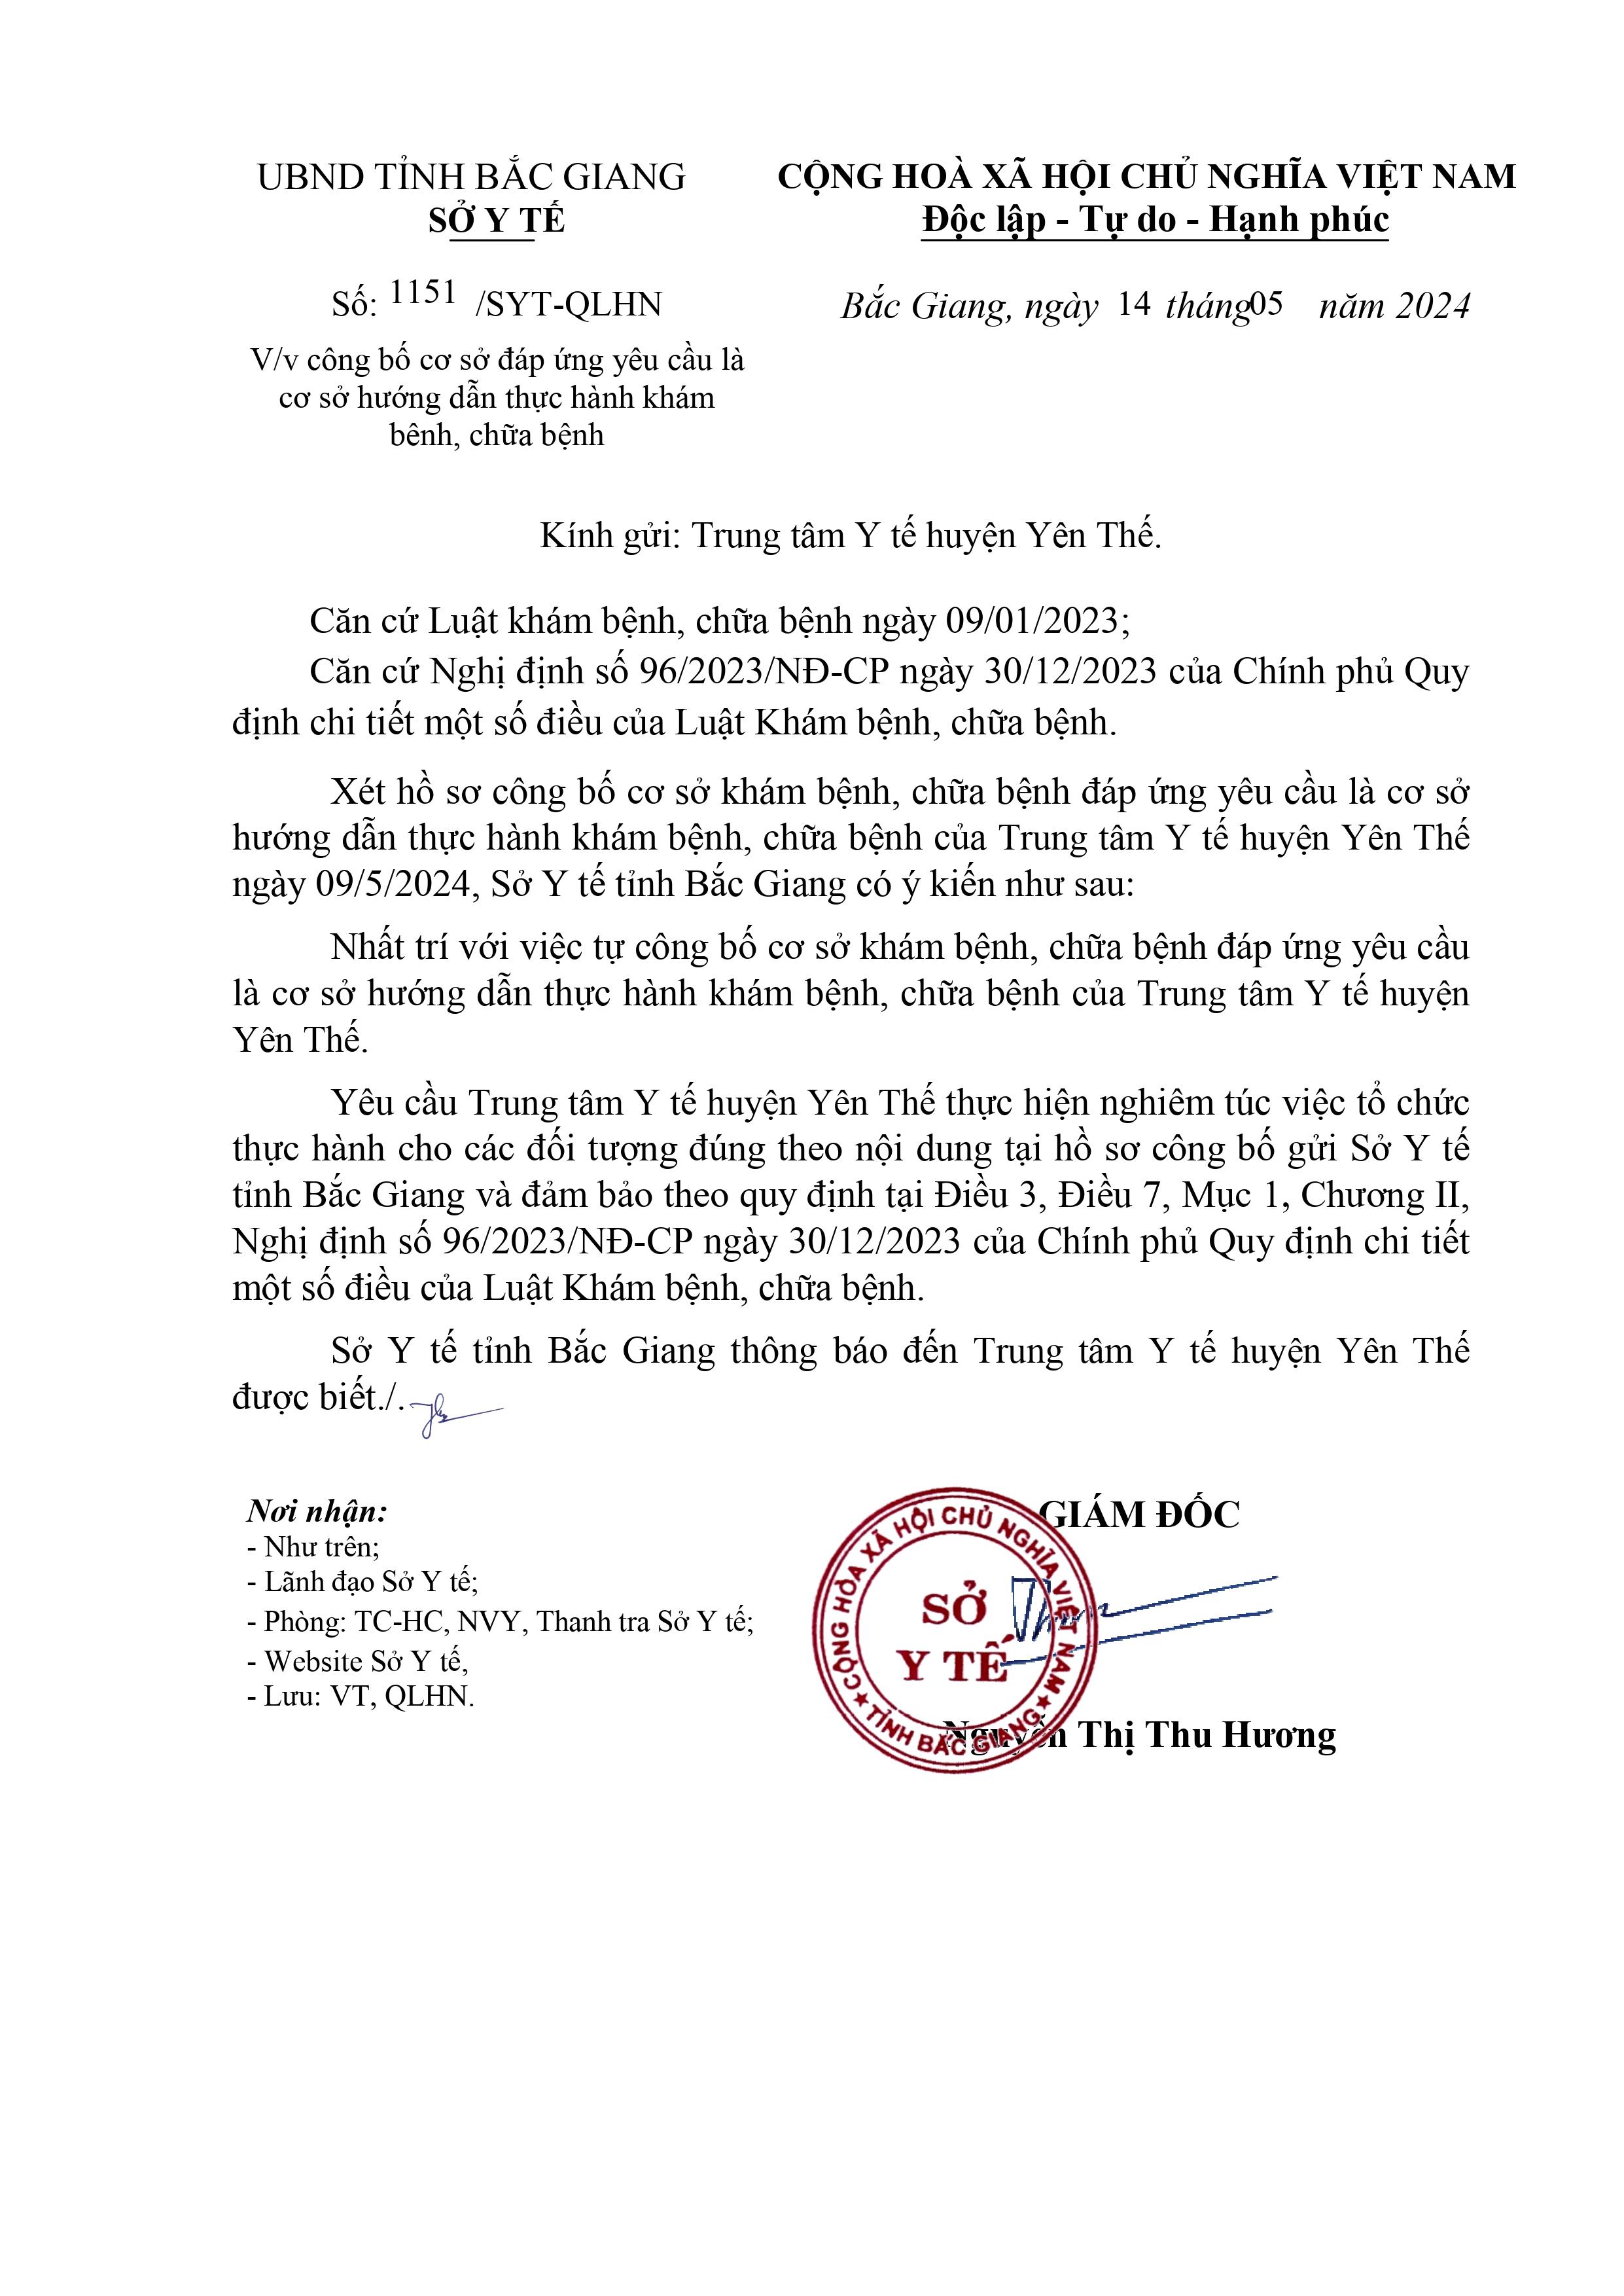 Trung tâm Y tế huyện Yên Thế được công bố là cơ sở hướng dẫn thực hành khám bệnh, chữa bệnh|https://trungtamytehuyenyenthe.vn/en_GB/chi-tiet-tin-tuc/-/asset_publisher/M0UUAFstbTMq/content/trung-tam-y-te-huyen-yen-the-uoc-cong-bo-la-co-so-huong-dan-thuc-hanh-kham-benh-chua-benh